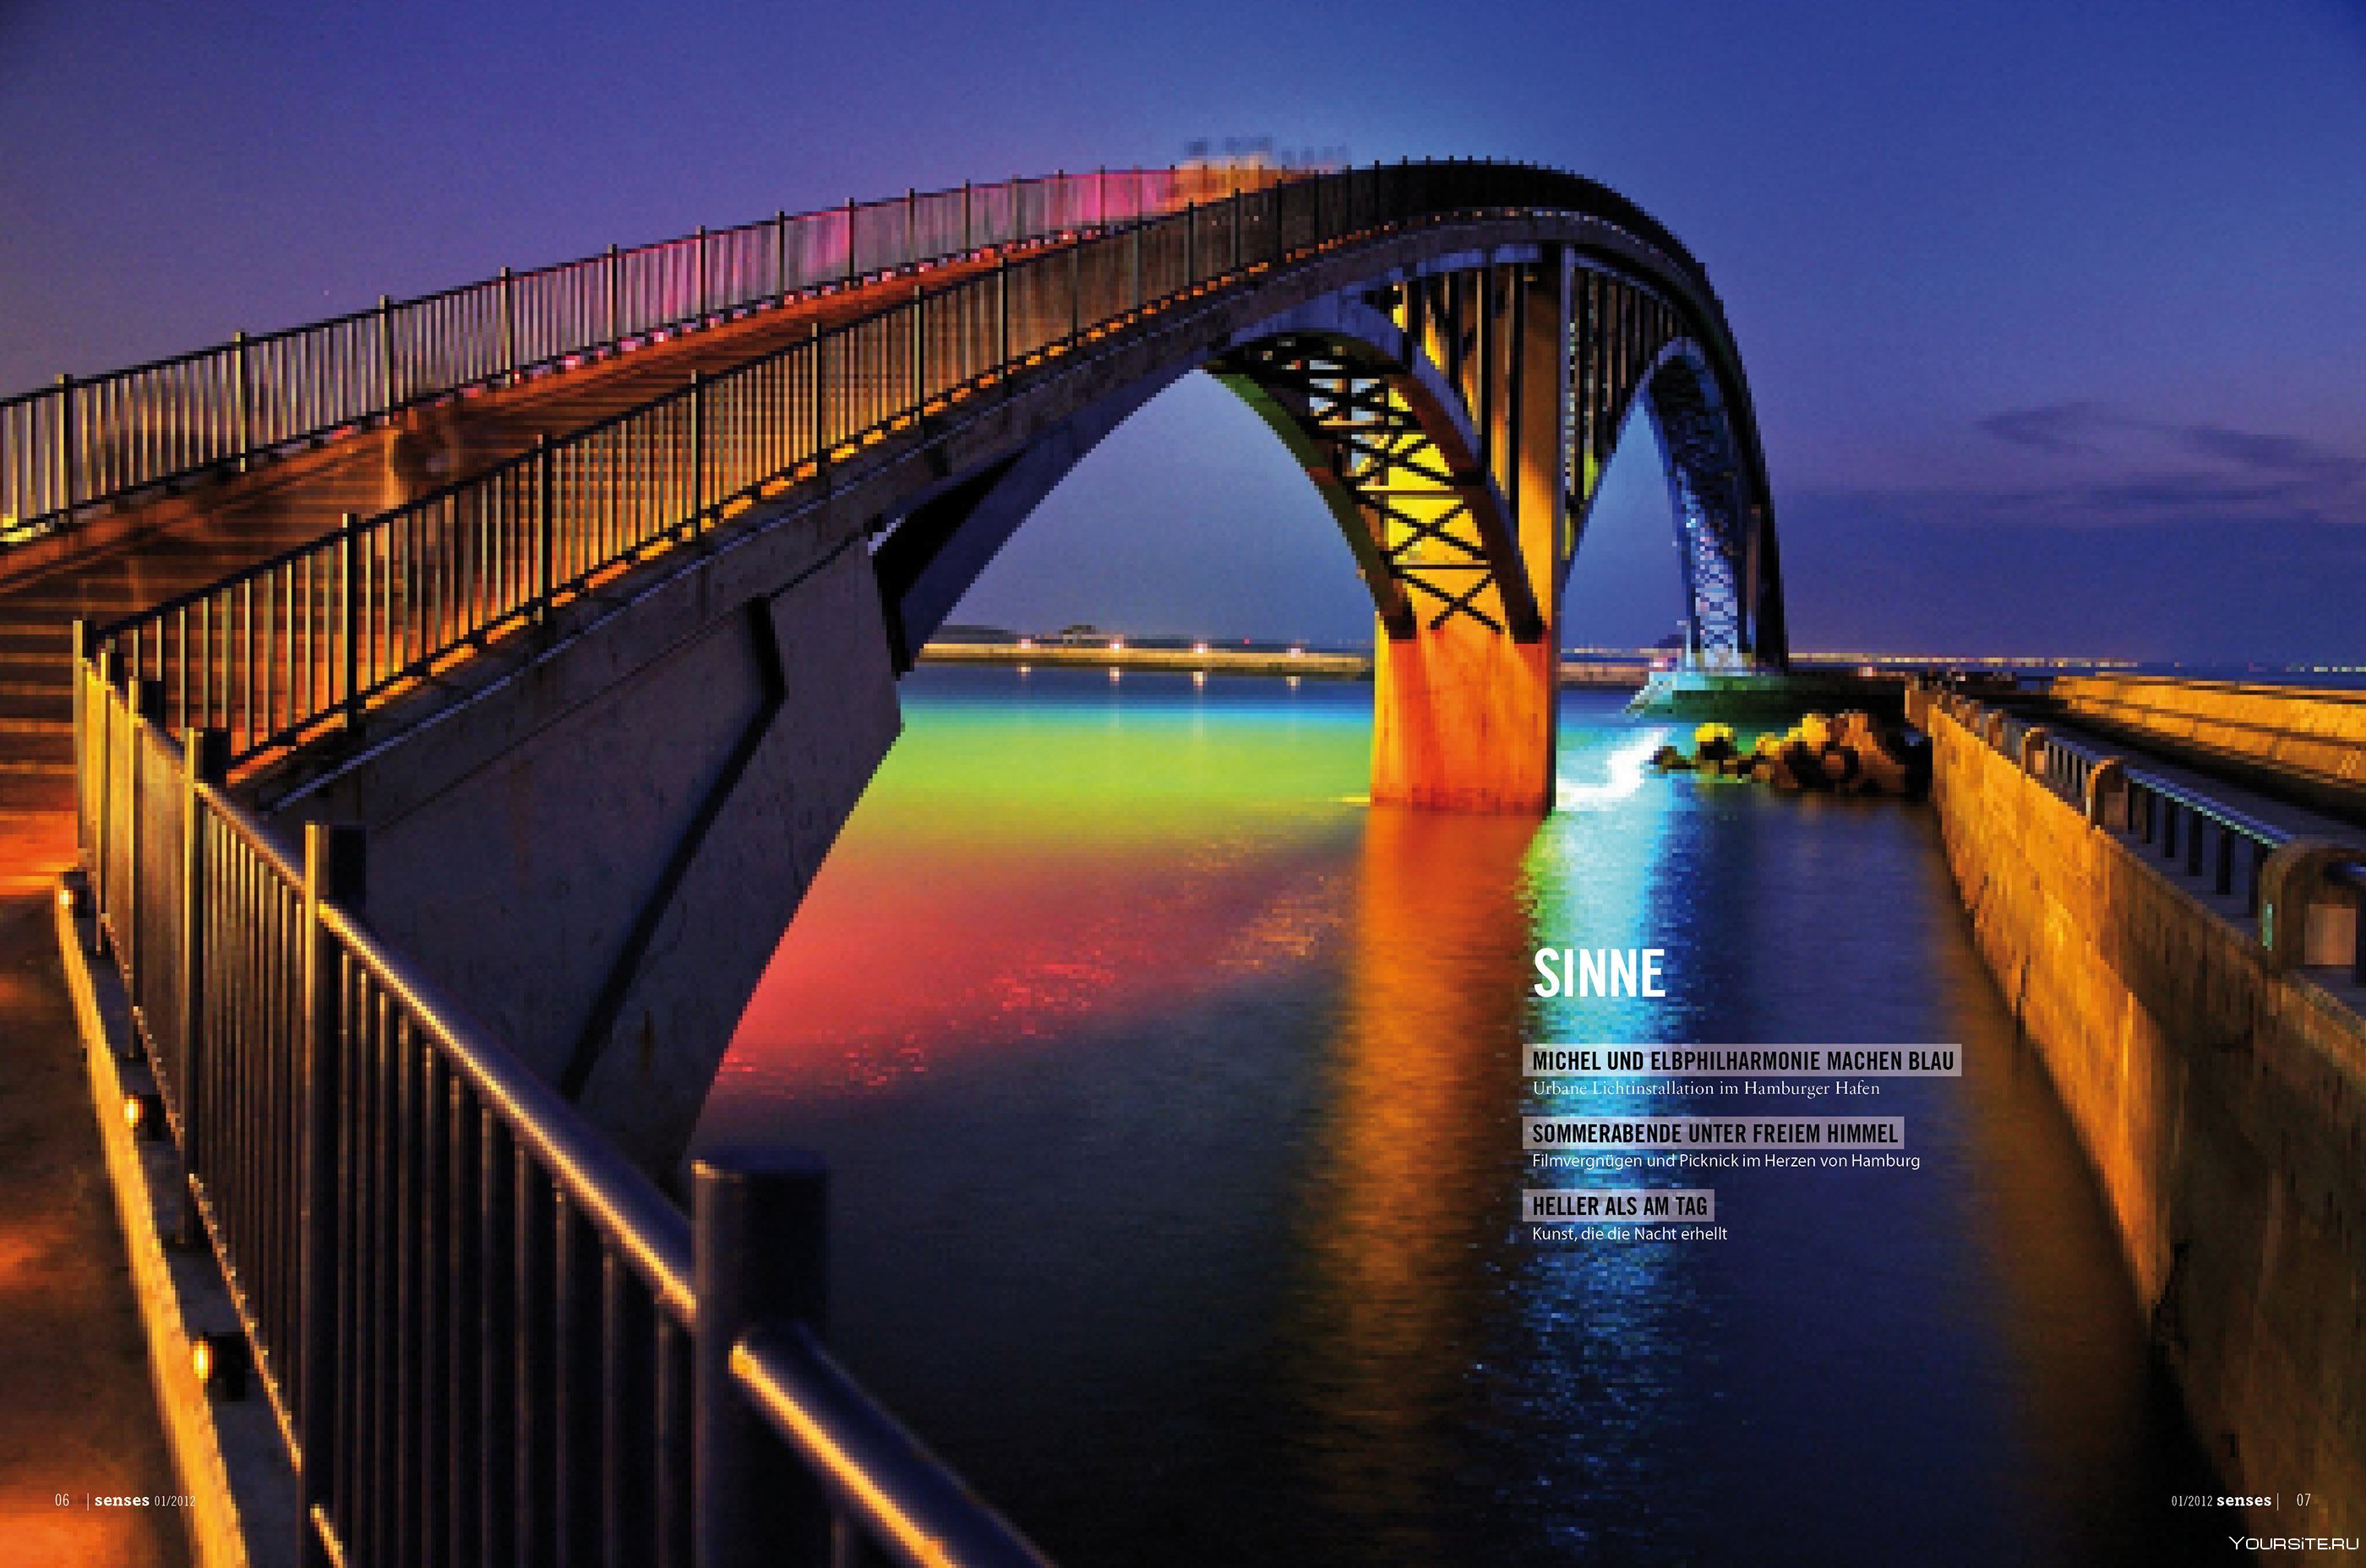 Хороший мост. Мост Рейнбоу. Радужный мост в Магонге, на Тайване. Рейнбоу бридж в США. Мост бридж в Токио био.